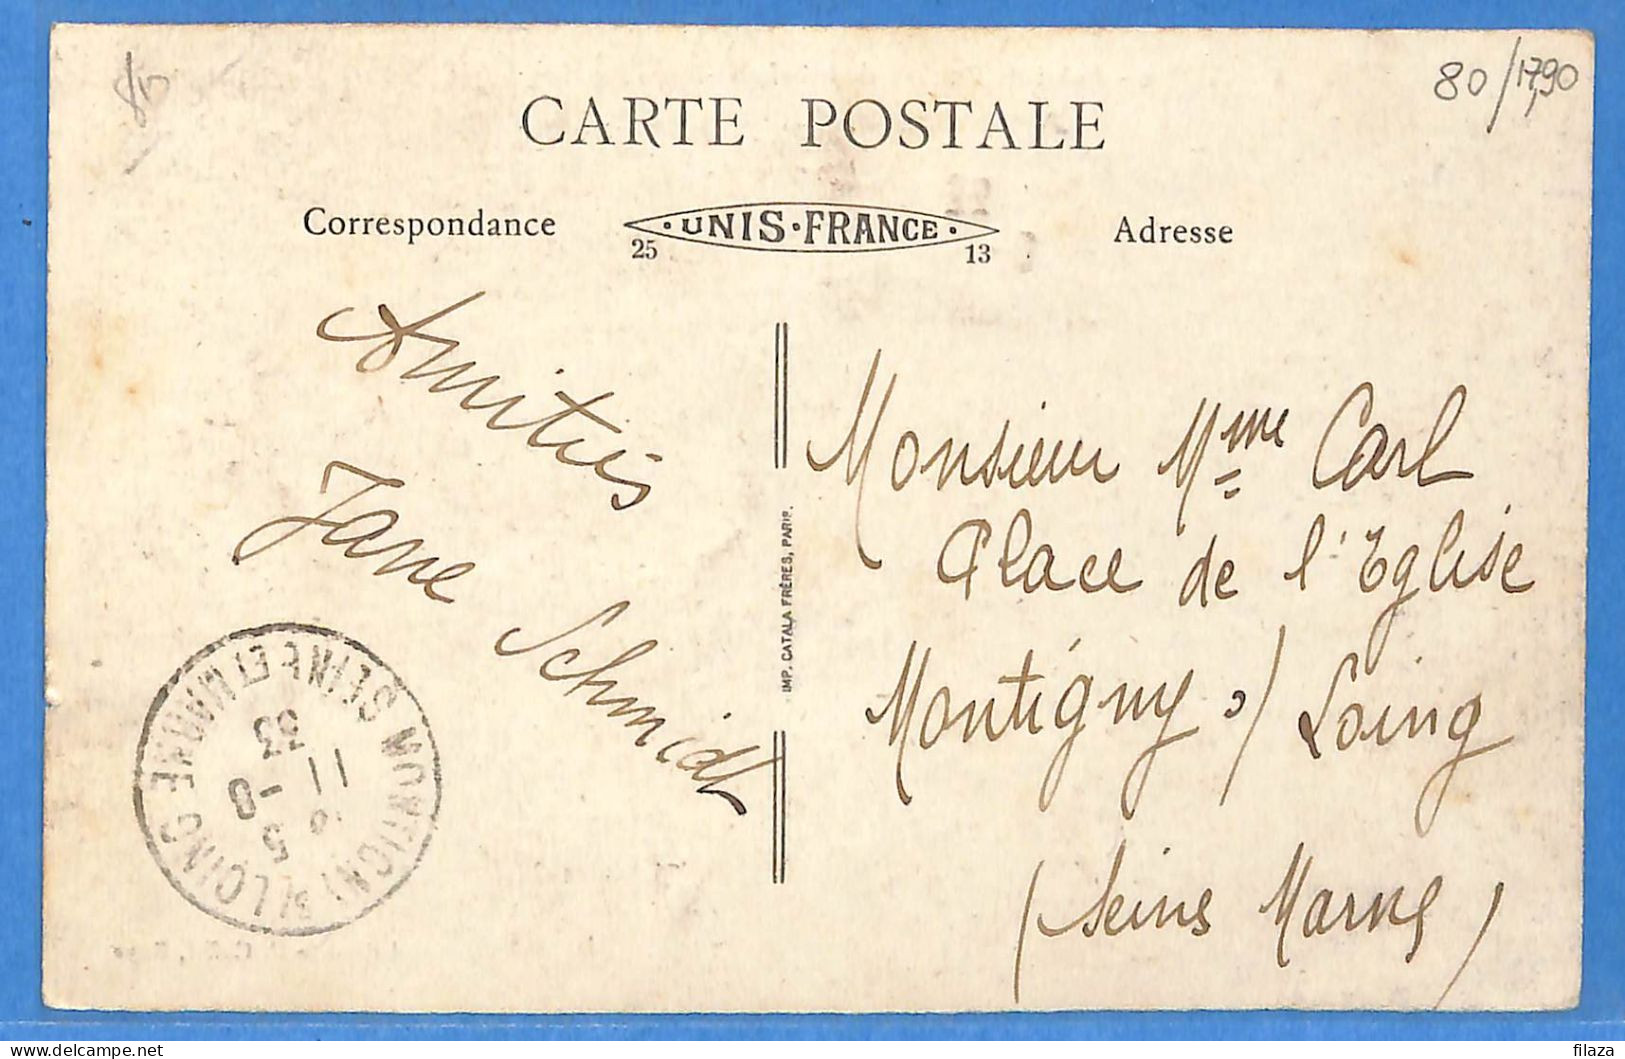 80 - Somme - Roye - Relai De Postes D'autrefois (N15736) - Roye